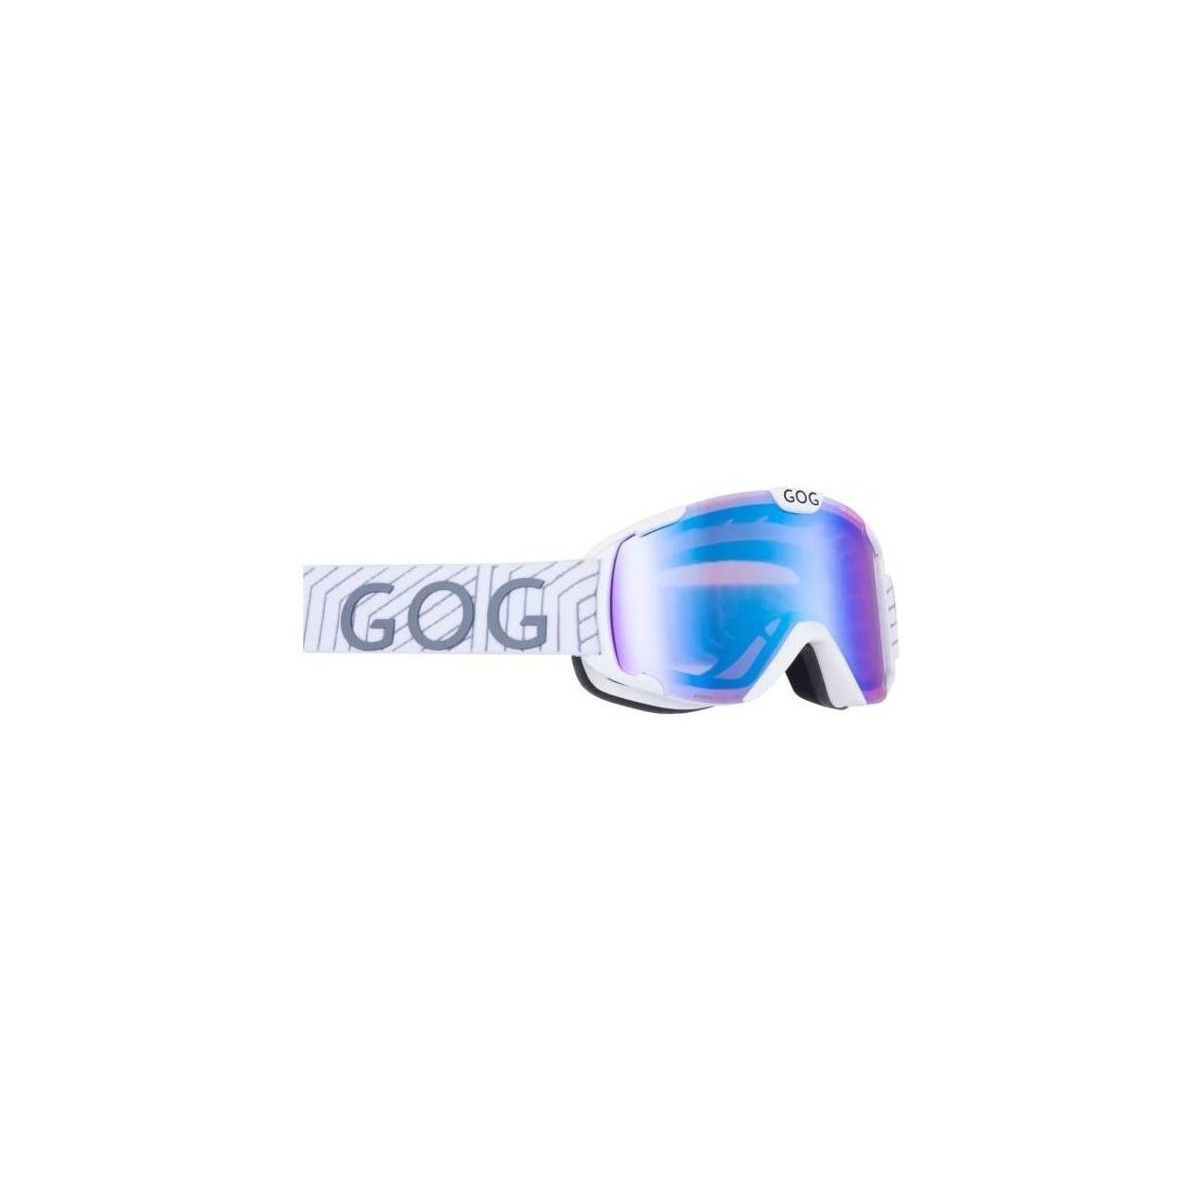 Doplnky Športové doplnky Goggle Nebula Modrá, Biela